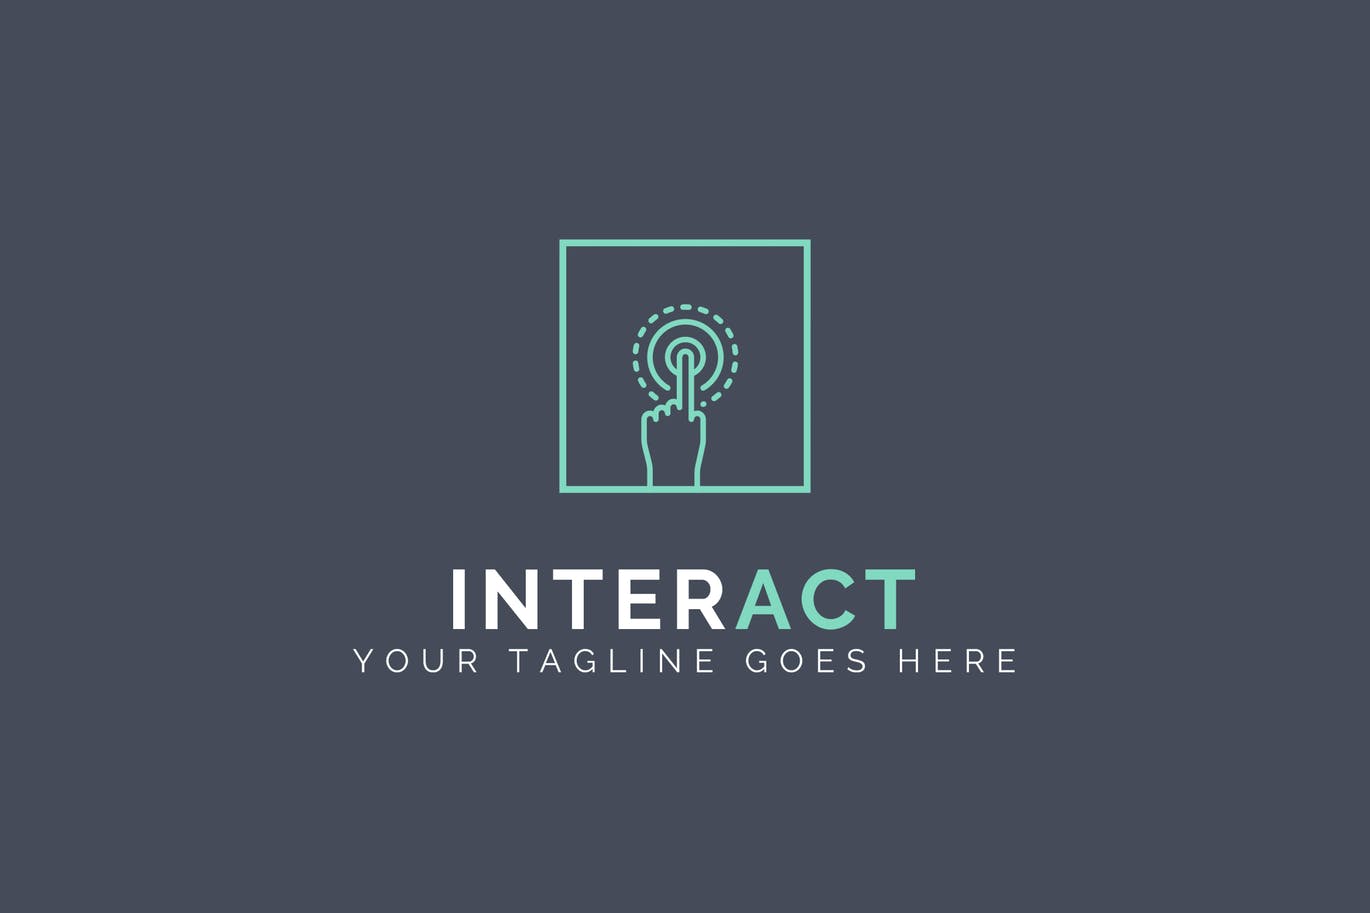 人机交互系统抽象Logo设计16图库精选模板 Interact – Abstract Logo Template插图